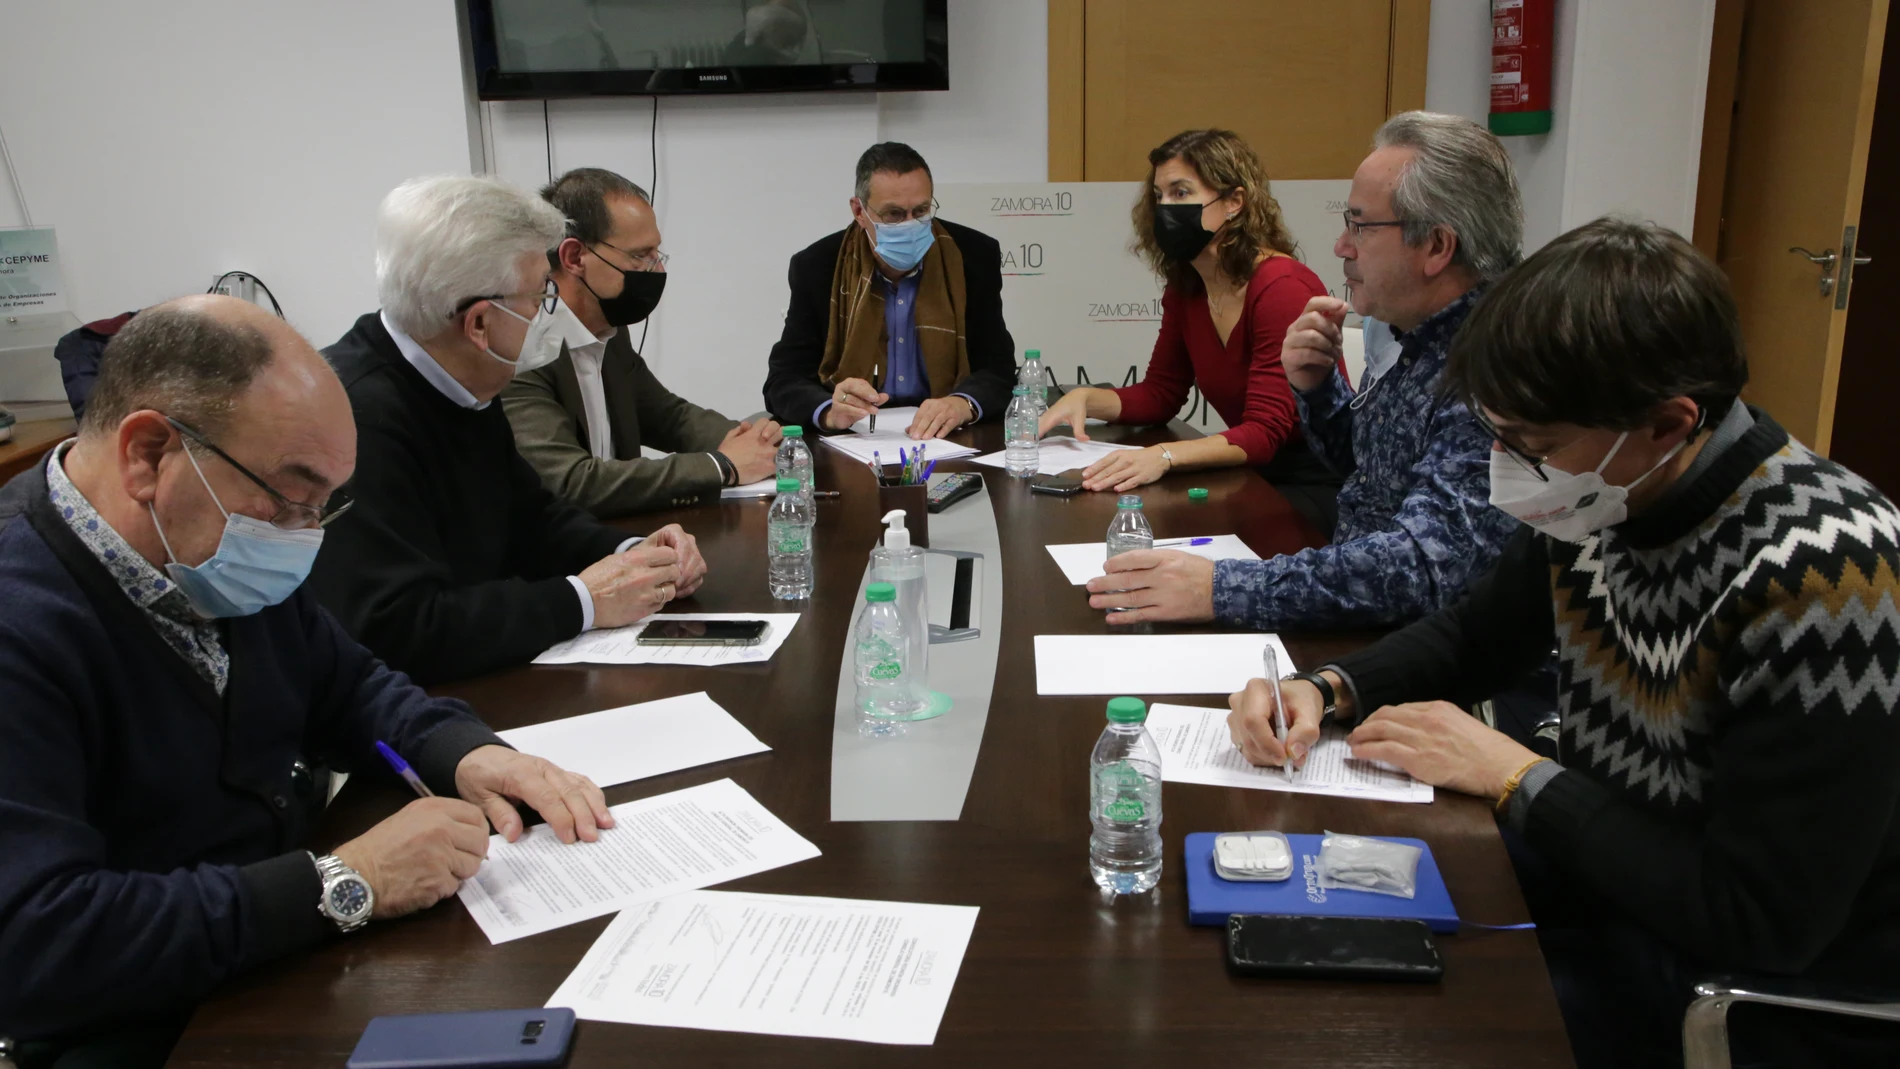 Zamora10 celebra una reunión ordinaria de su Consejo General